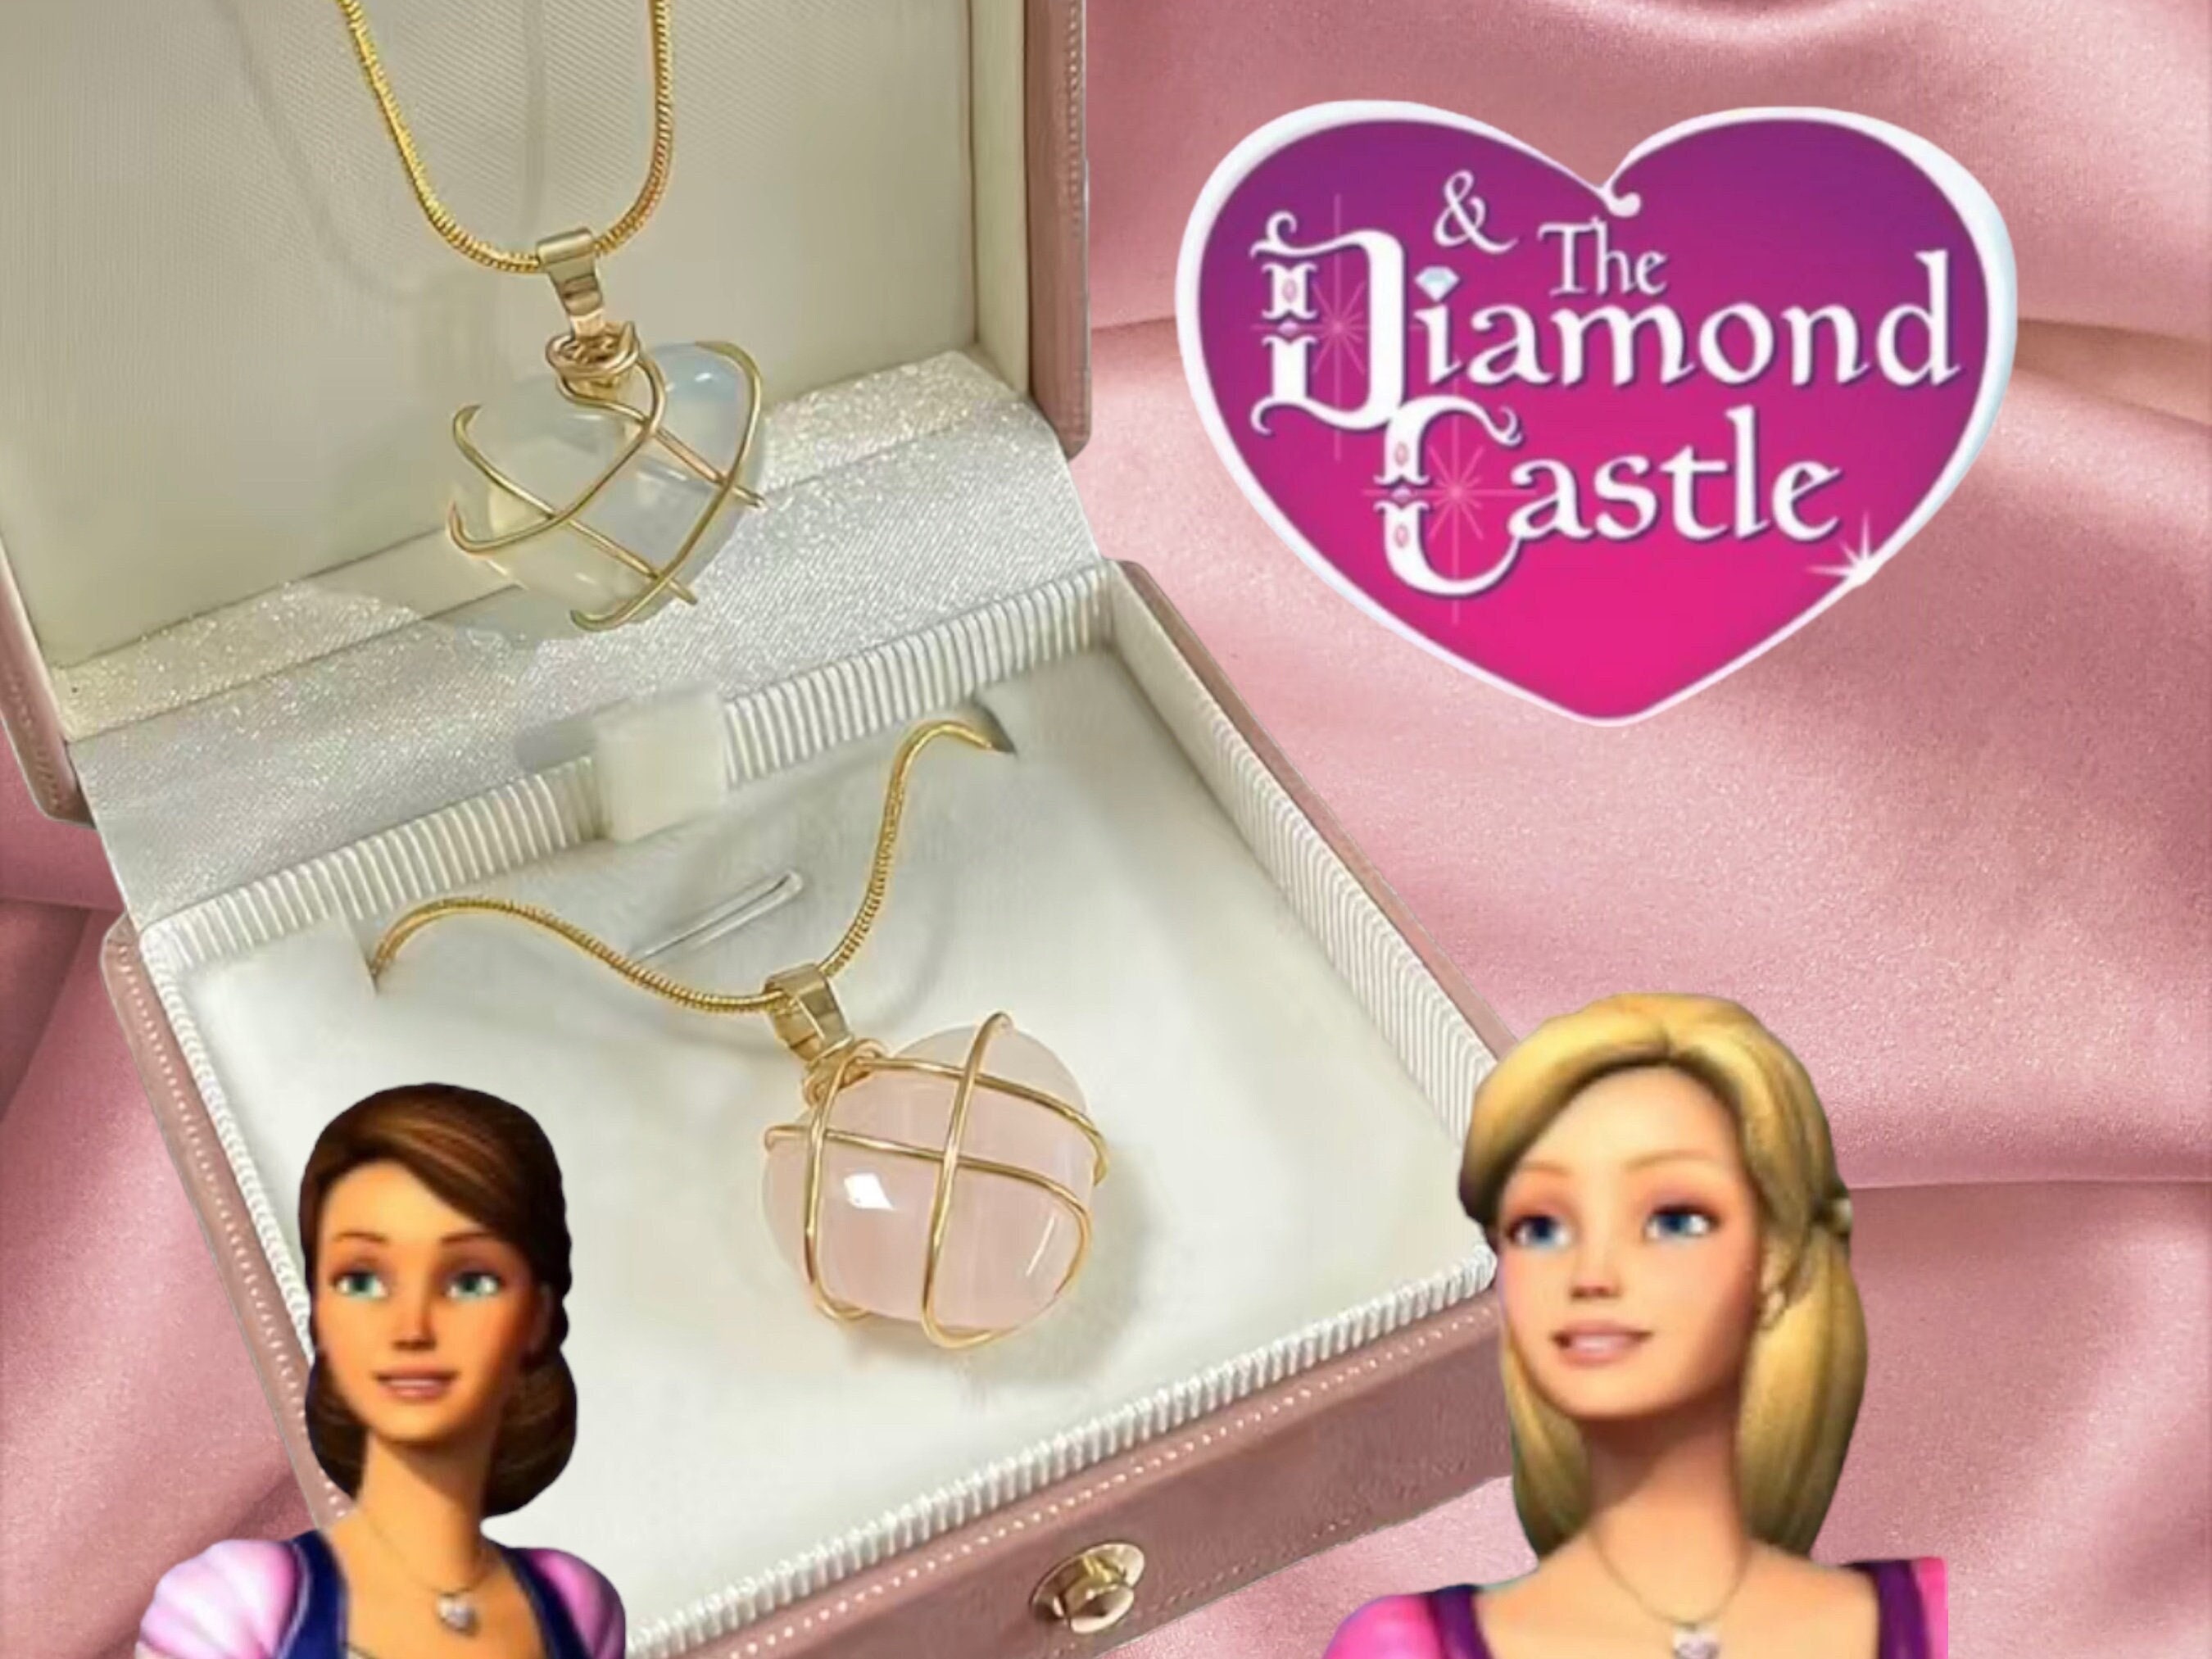  Barbie Crystal Heart Necklace & Bracelet Set : Toys & Games